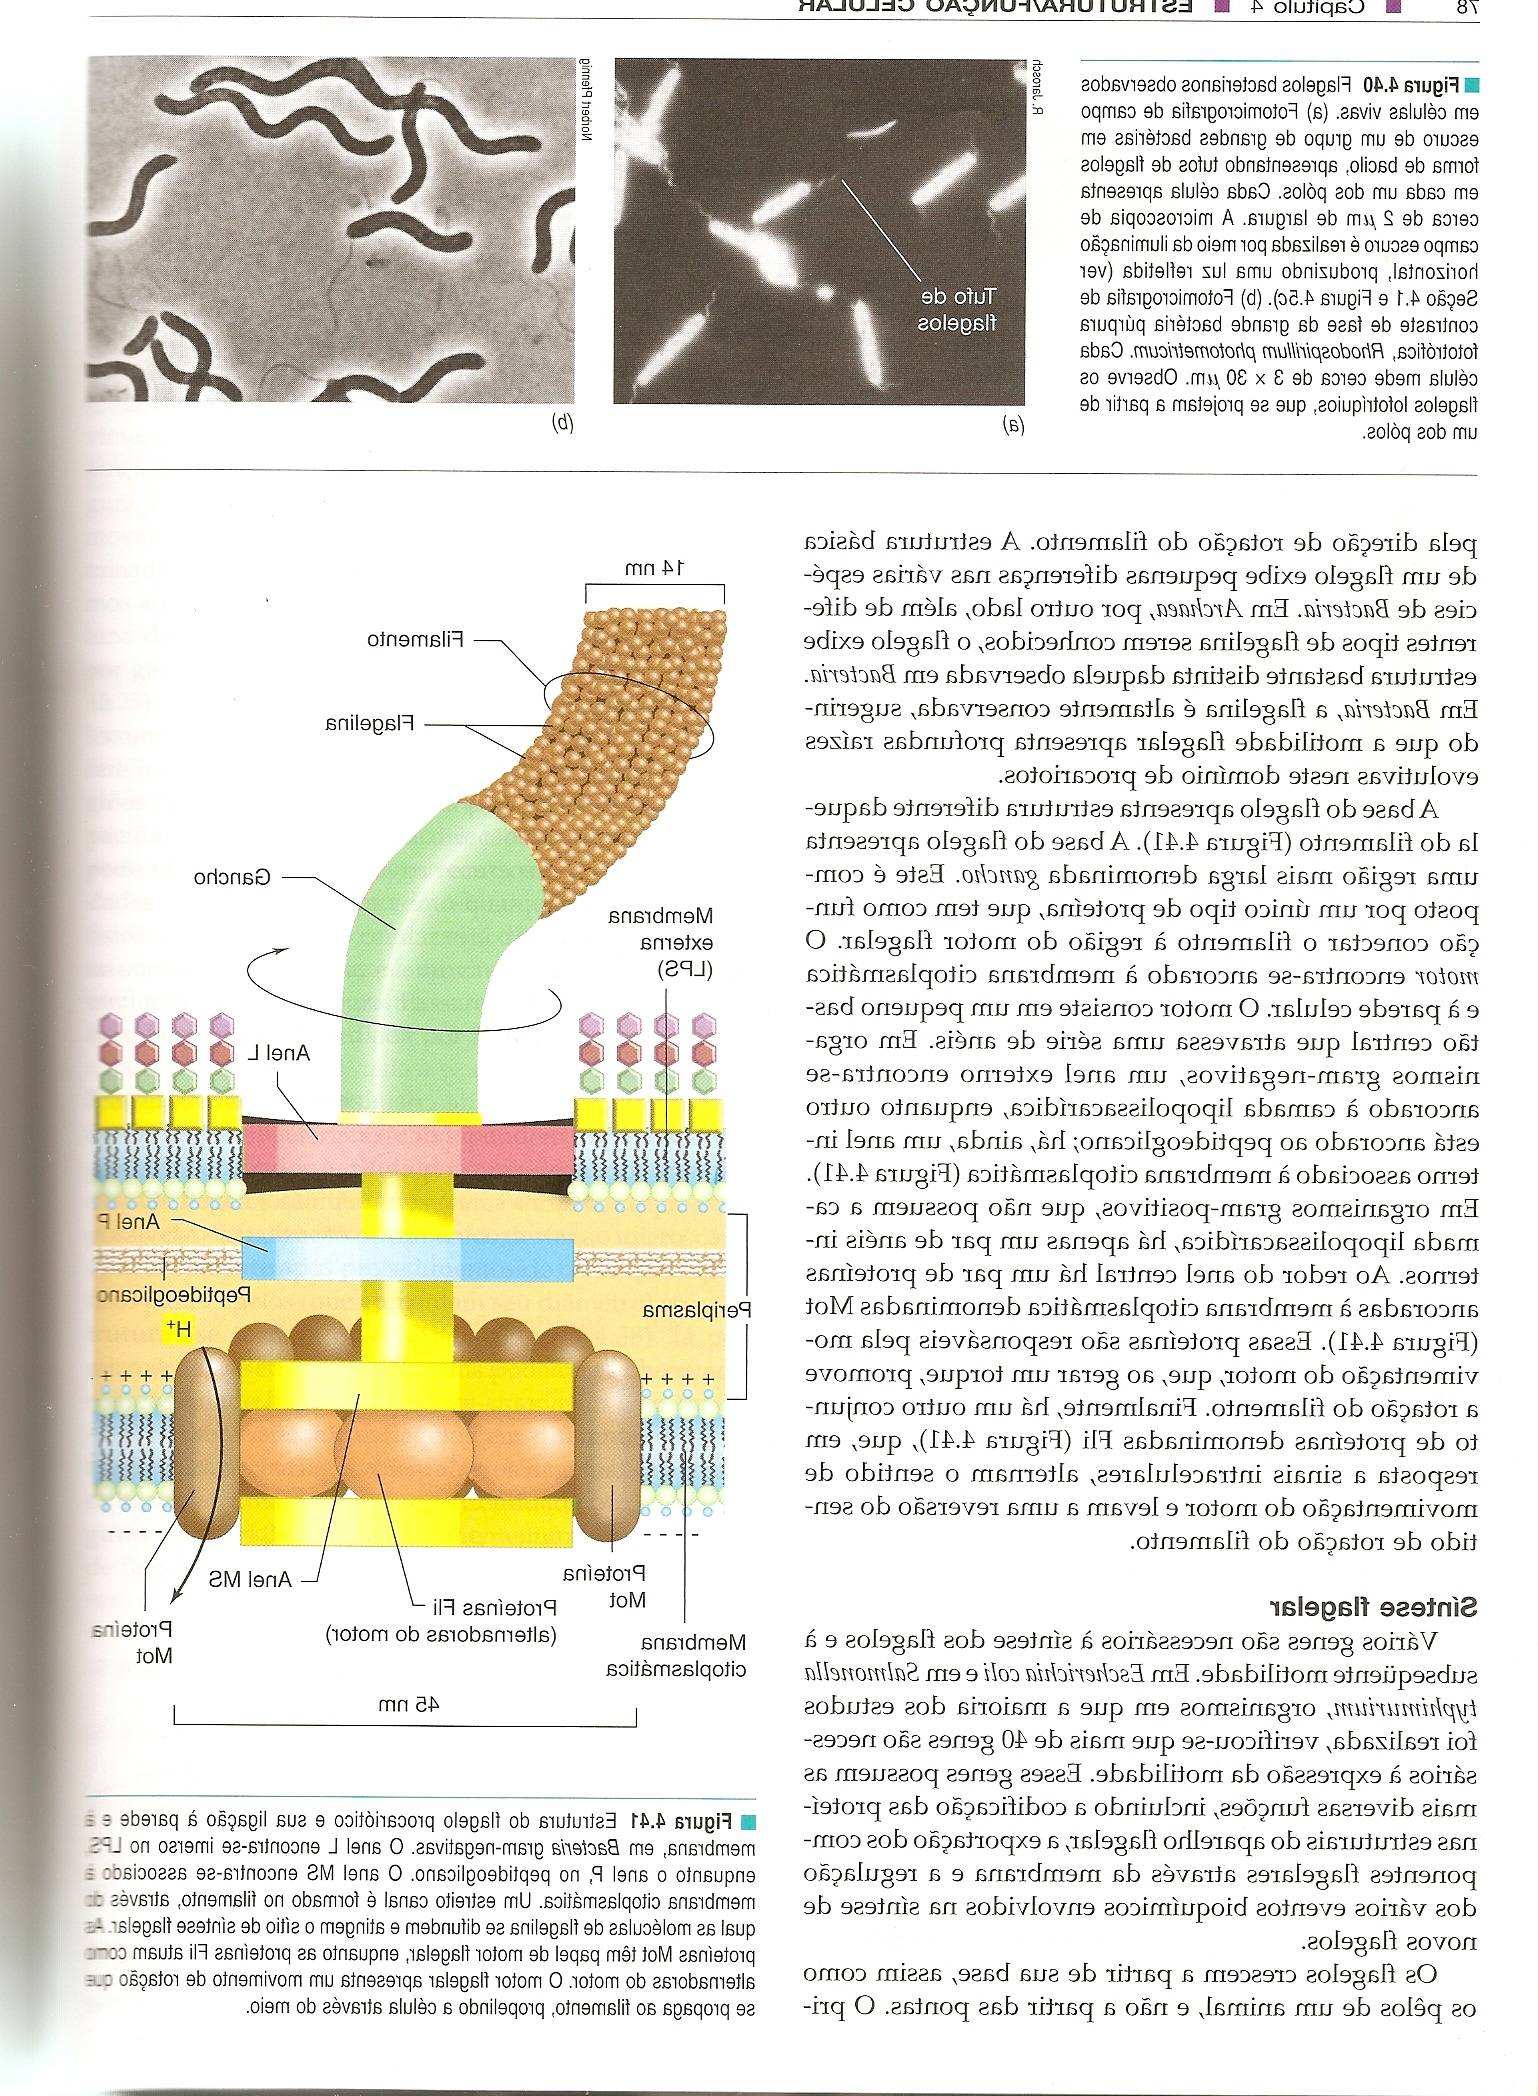 15/10/2009 Flagelo Apresentação (arranjo): Apêndices longos e finos (A) Monotríquio (ex. Vibrio cholerae) Origem na membrana citoplasmática.